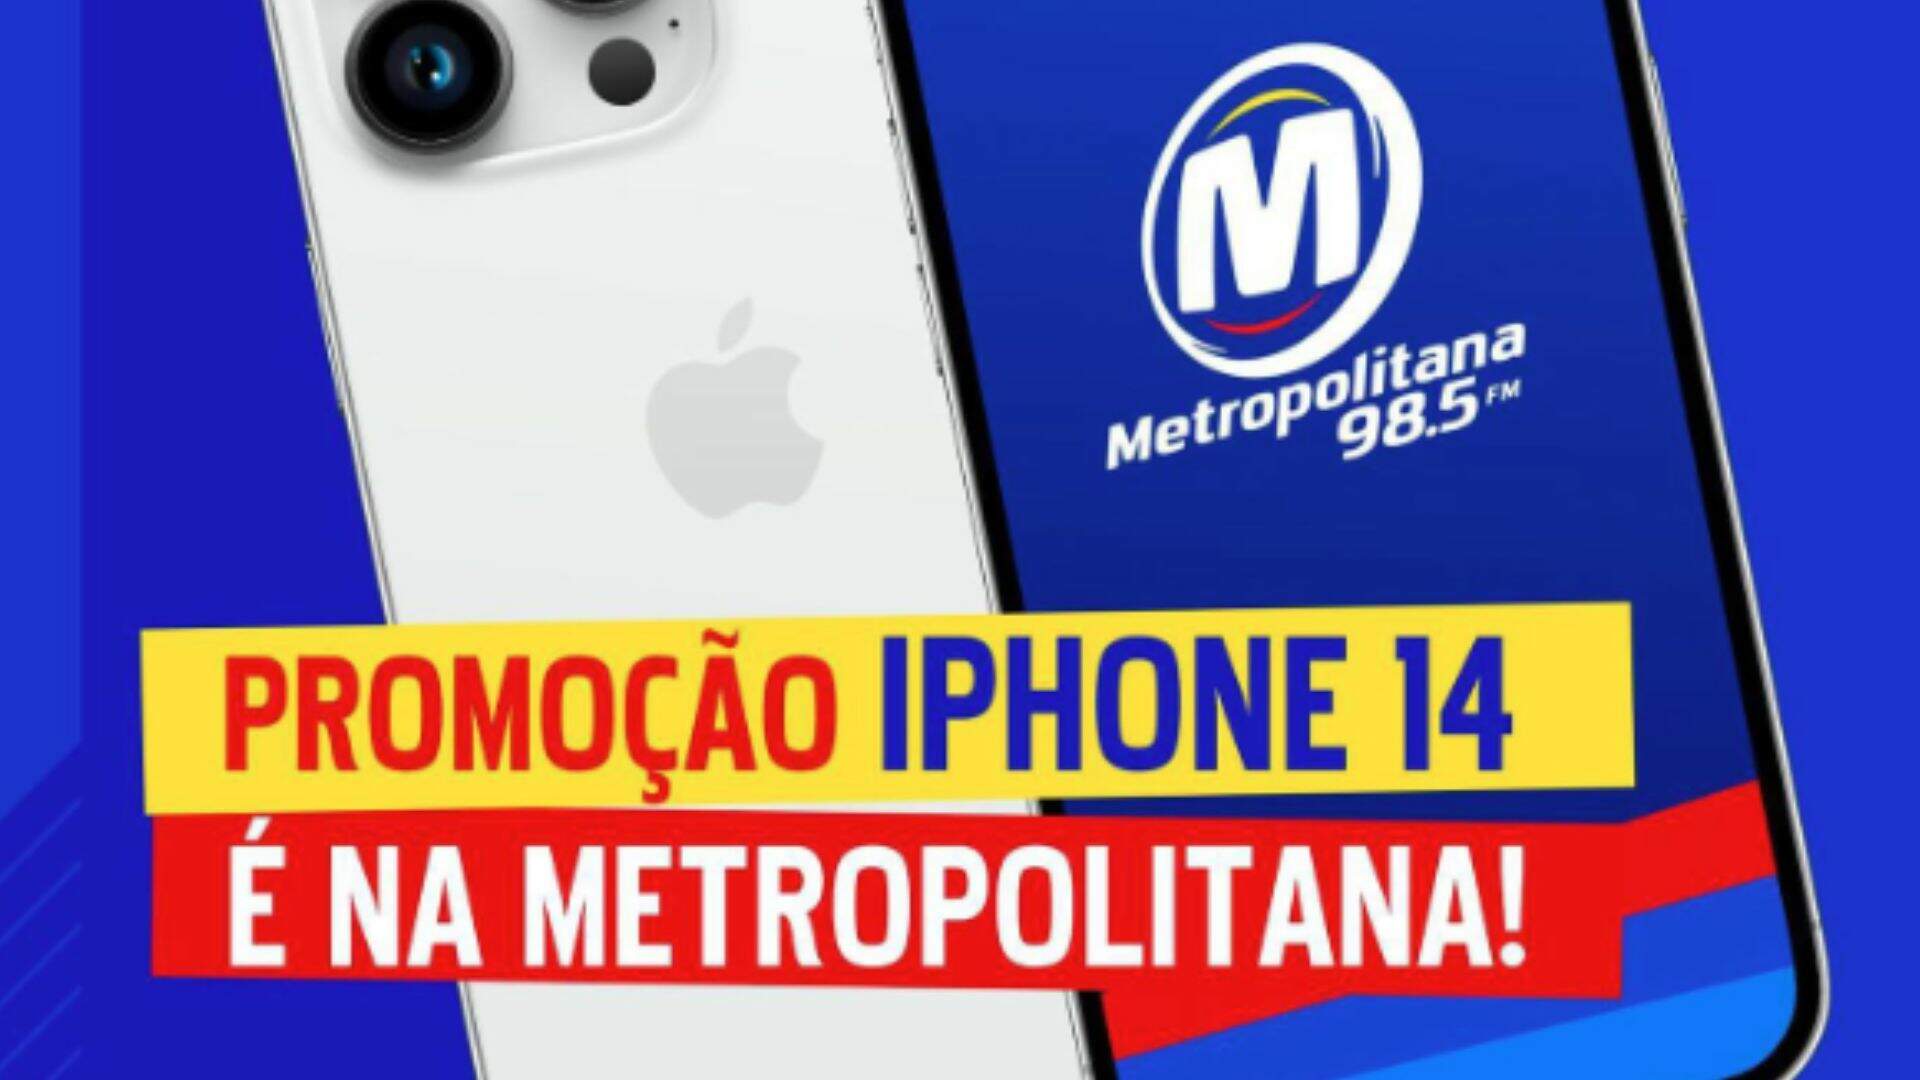 [ENCERRADA] Promoção: IPHONE 14 É NA METROPOLITANA FM - Metropolitana FM